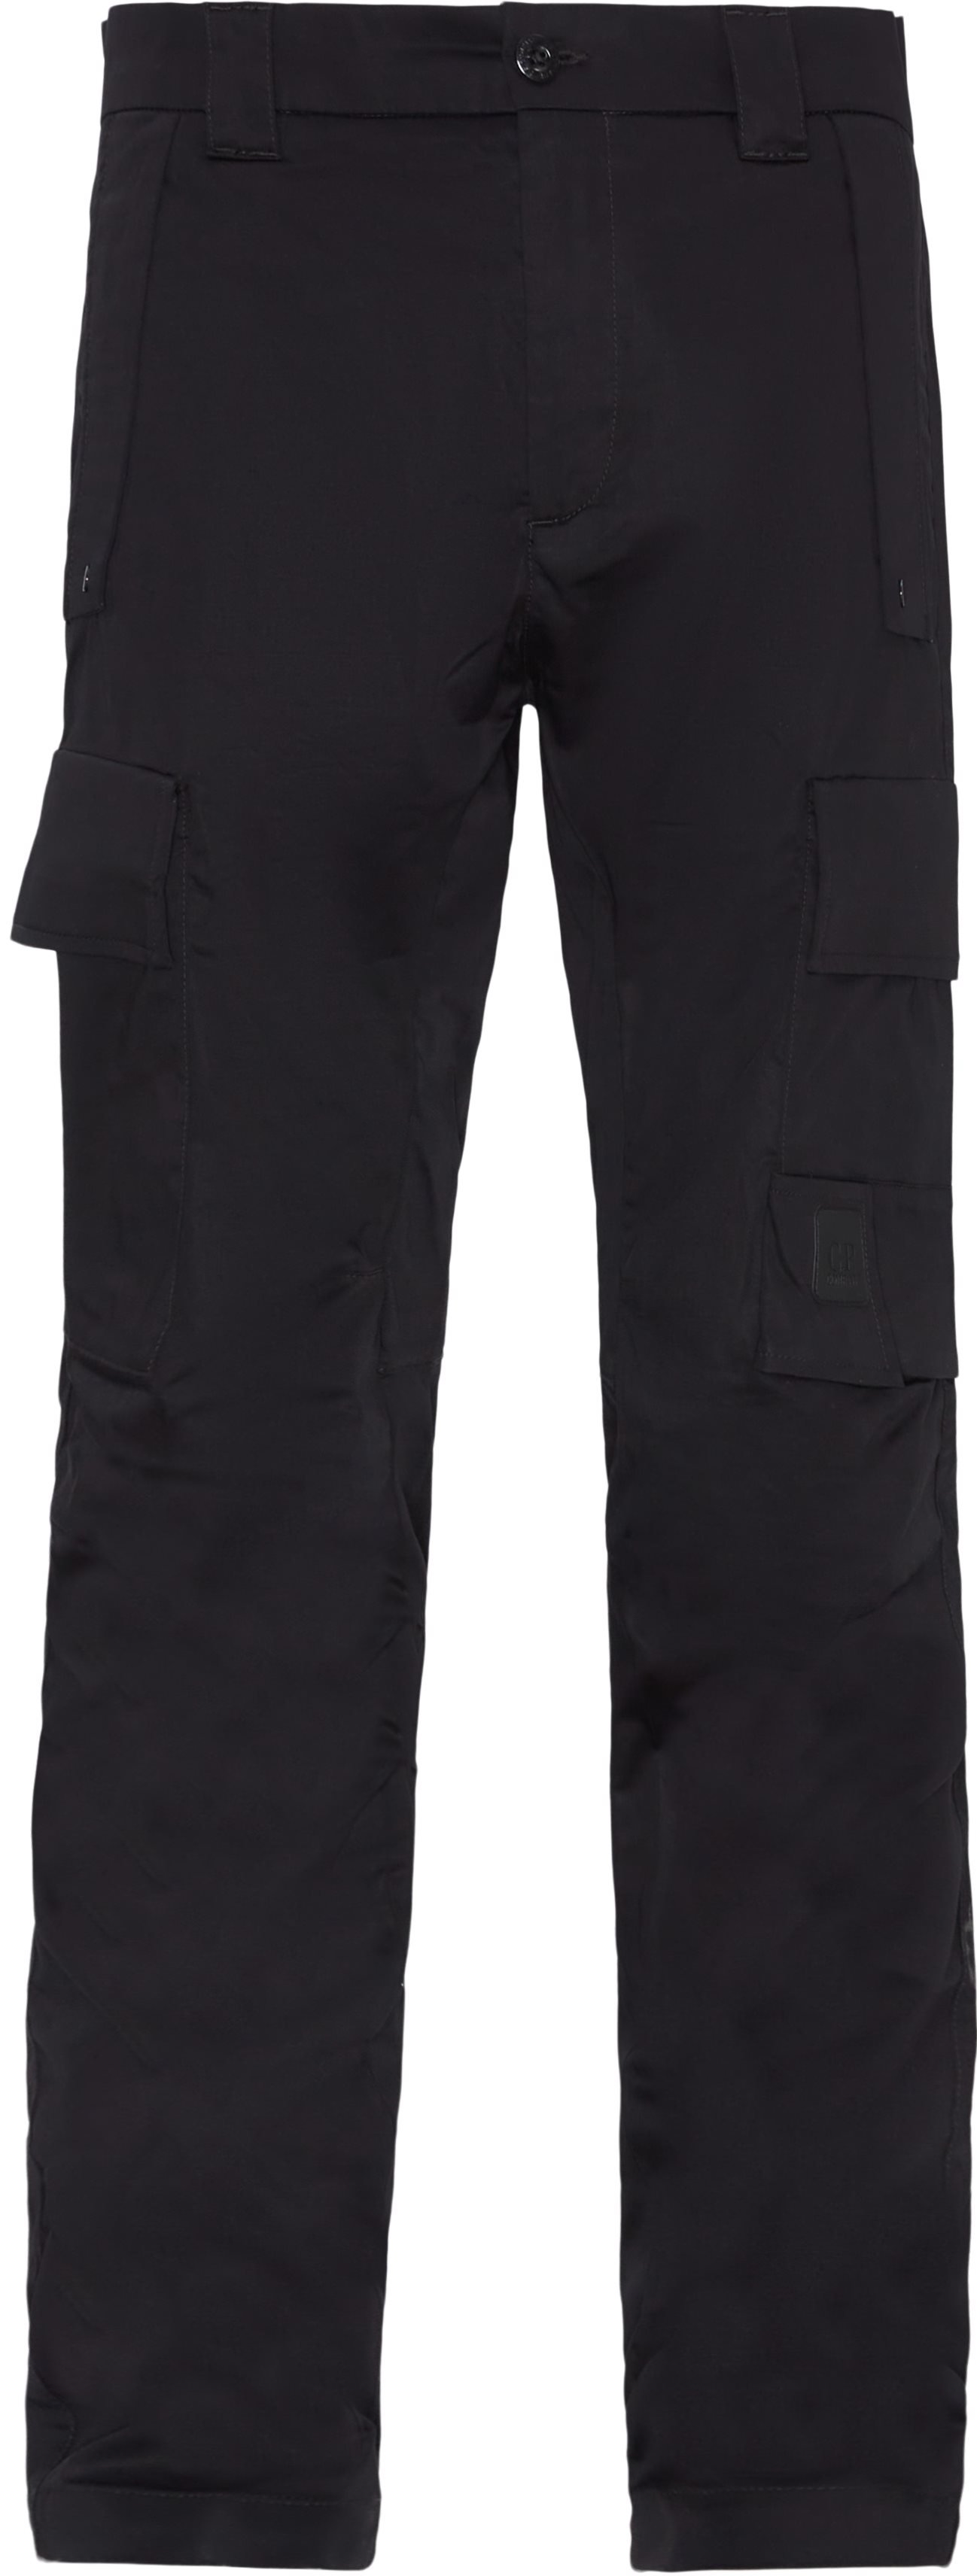 C.P. Company Trousers PA128A 110042A Black